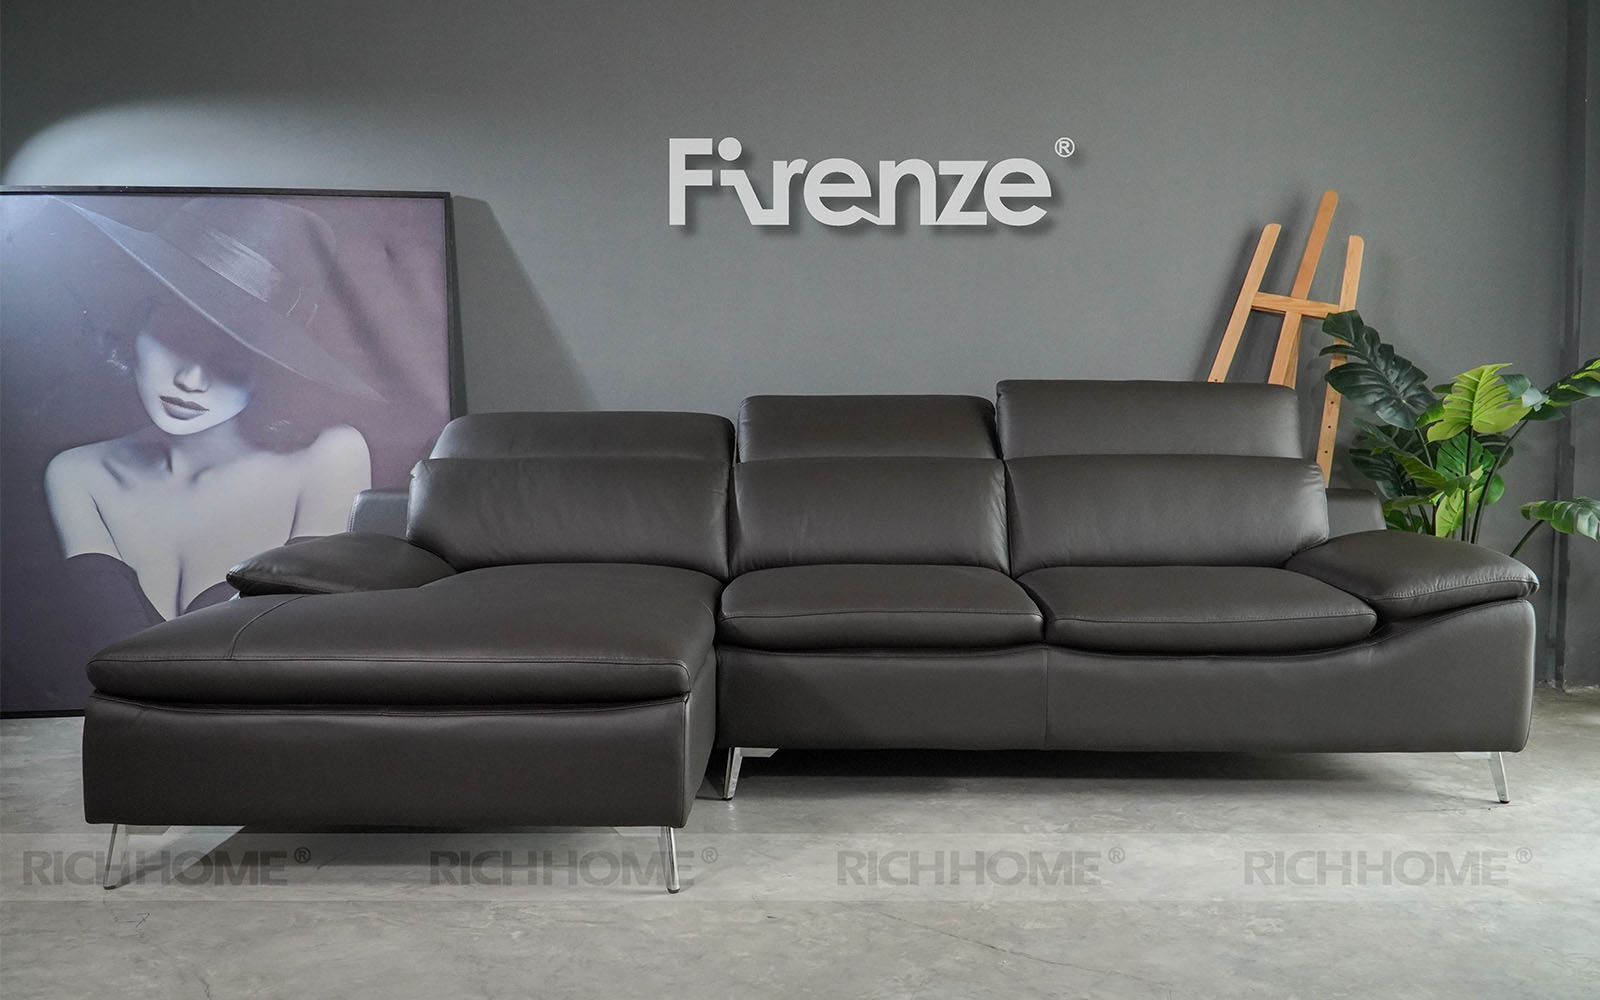 Tuyển tập các mẫu sofa màu đen thiết kế tinh tế và sang trọng nhất - Ảnh 2